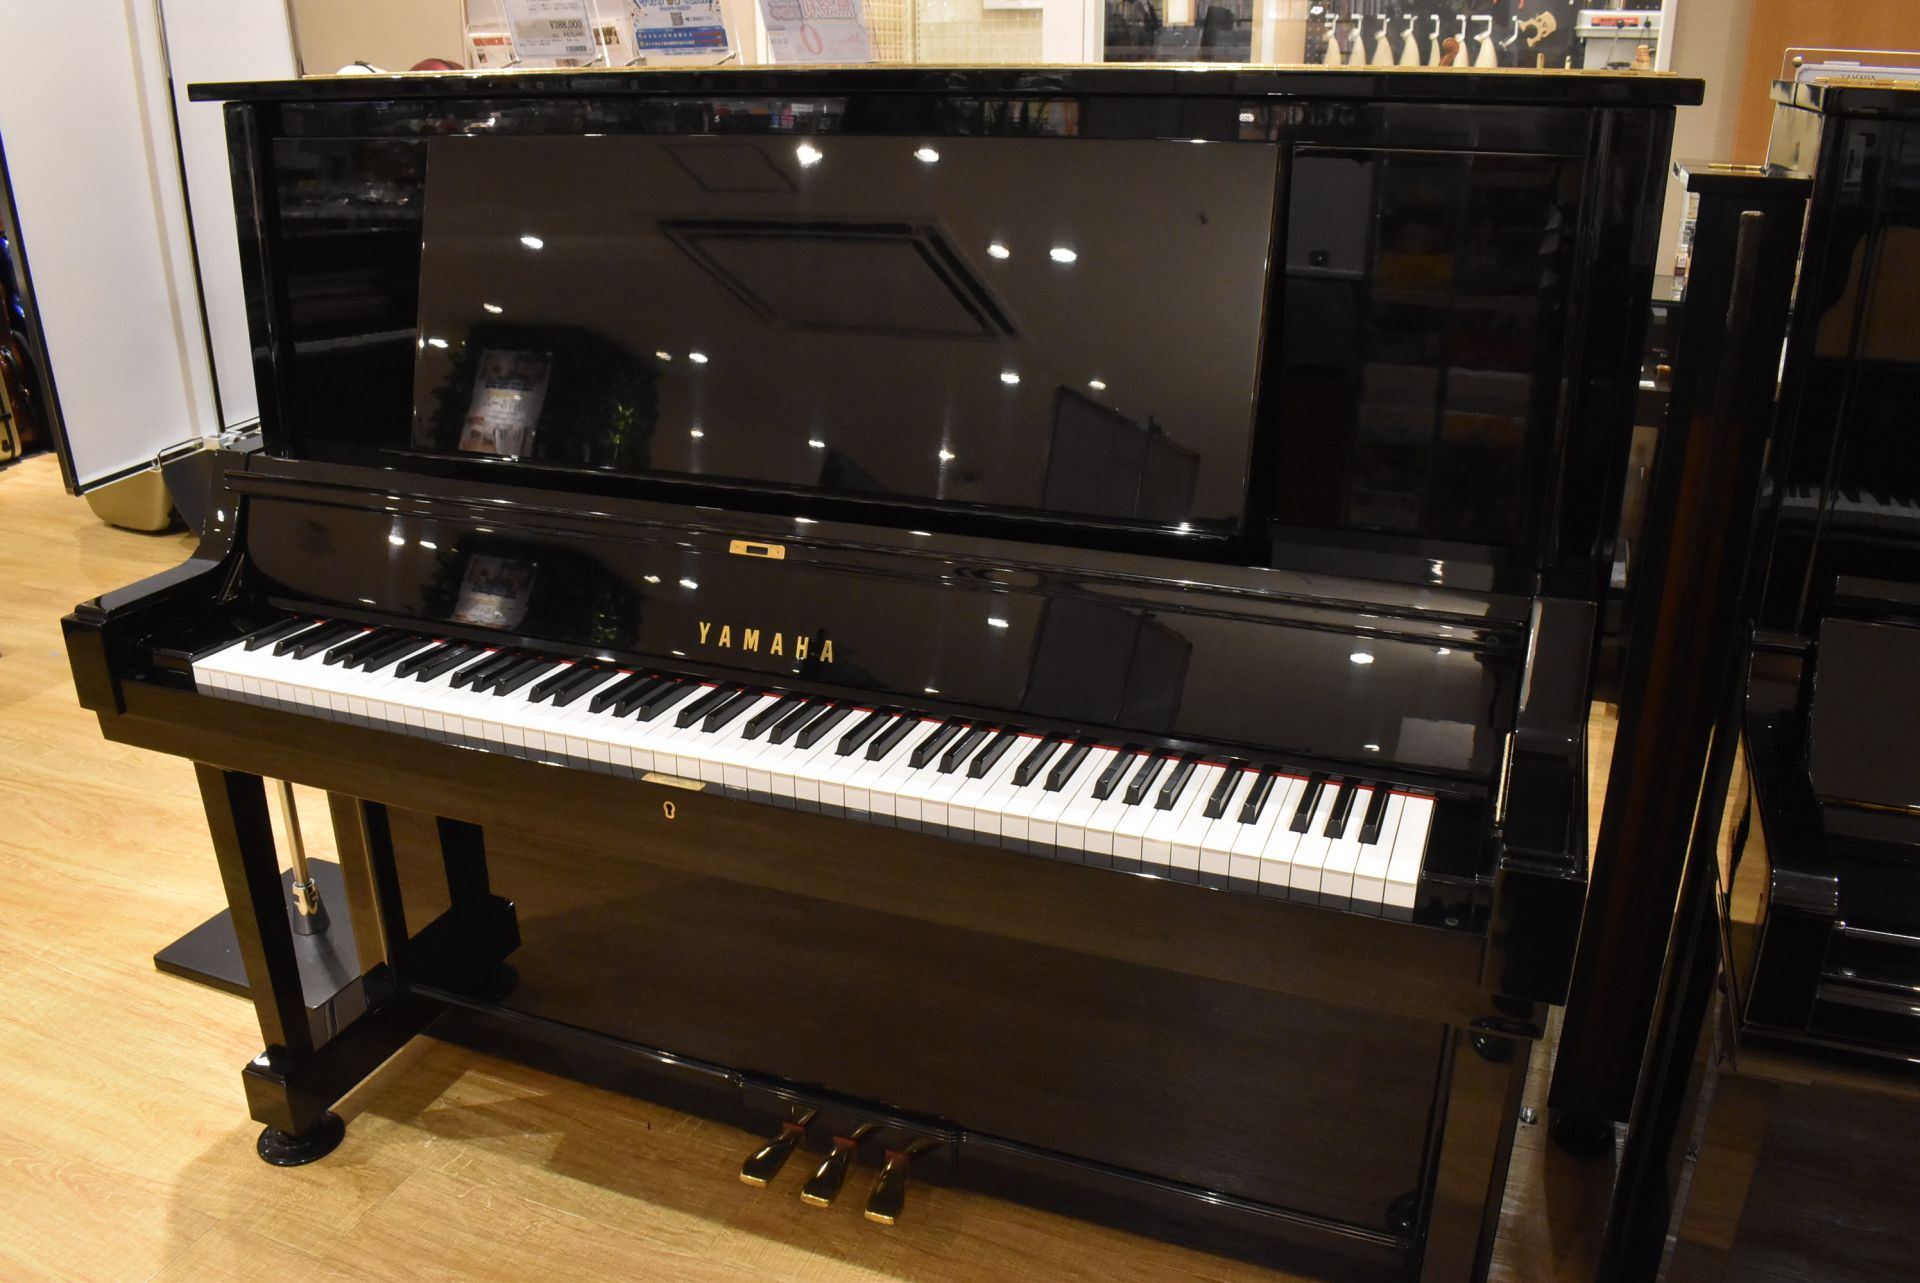 **YAMAHA UX5 1983年製　 |*品番|YAMAHA UX5 1983年製| |*販売]]価格|[!￥598,000(税抜)!]| |*詳細|譜面台の裏側にトーンエスケープがあり、響きがよりクリアになっています。UXシリーズの中でもハイグレードなピアノです。]]高さ131cm×幅154c […]